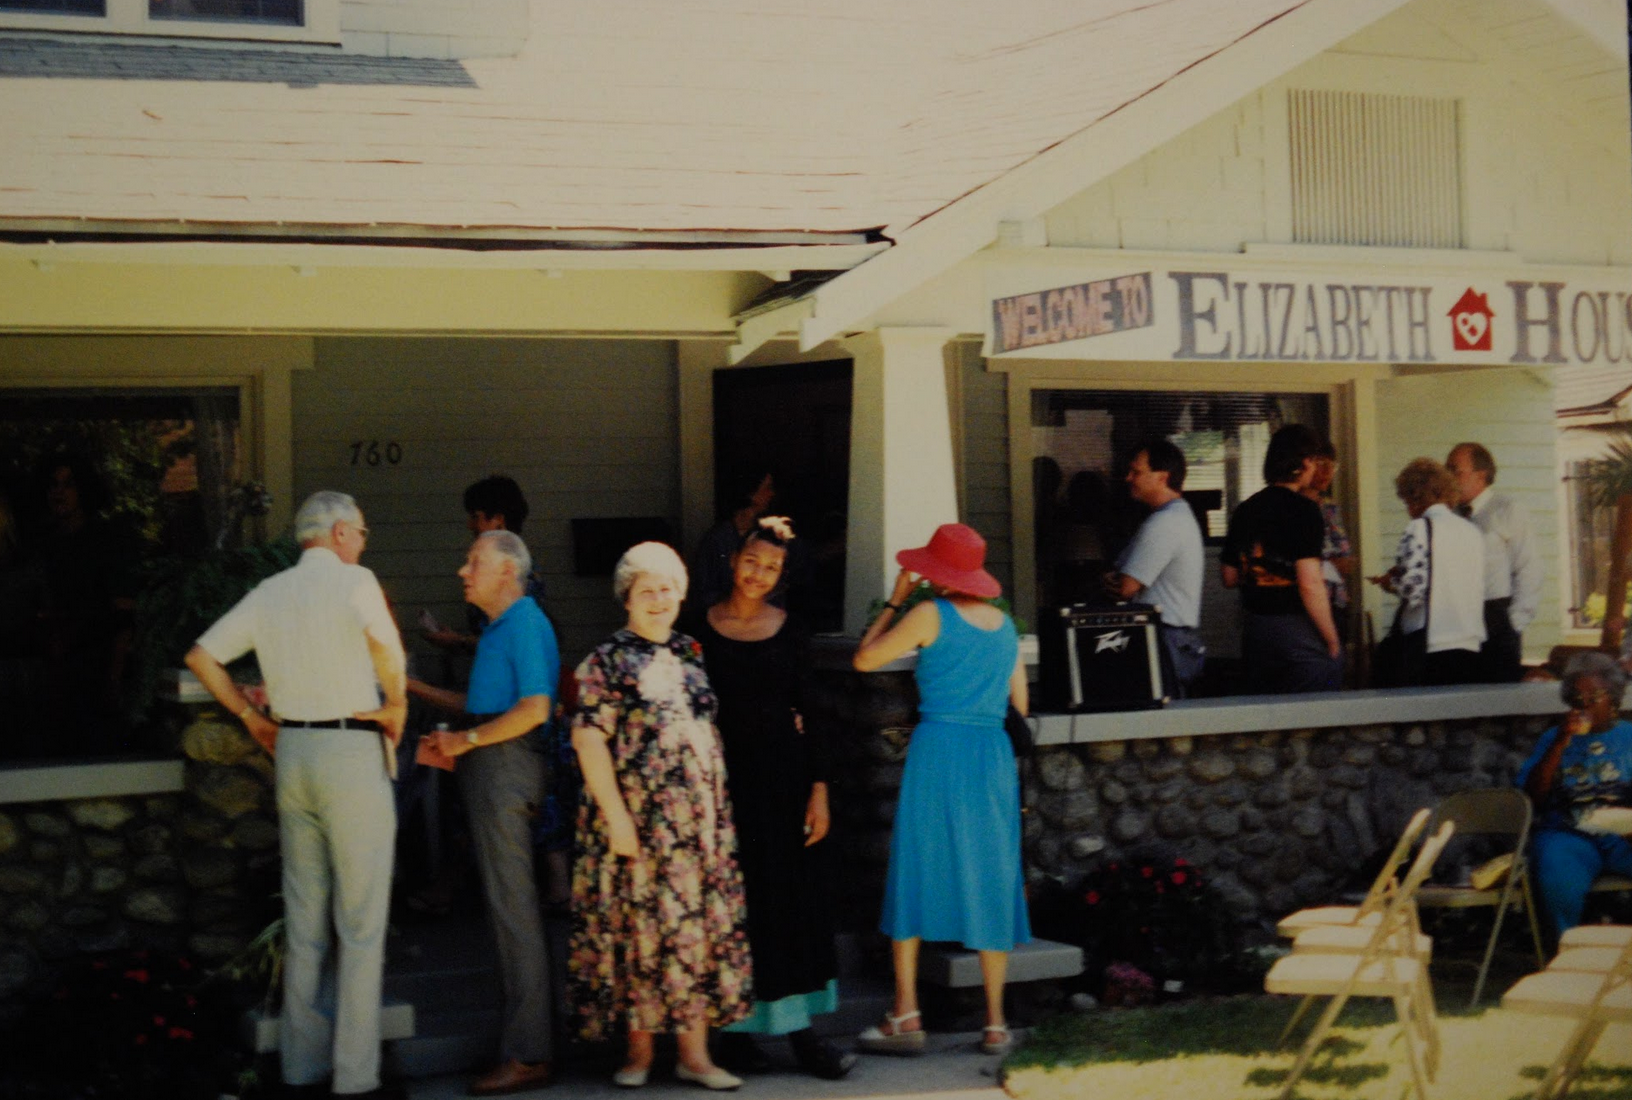 Elizabeth House opening, 1994